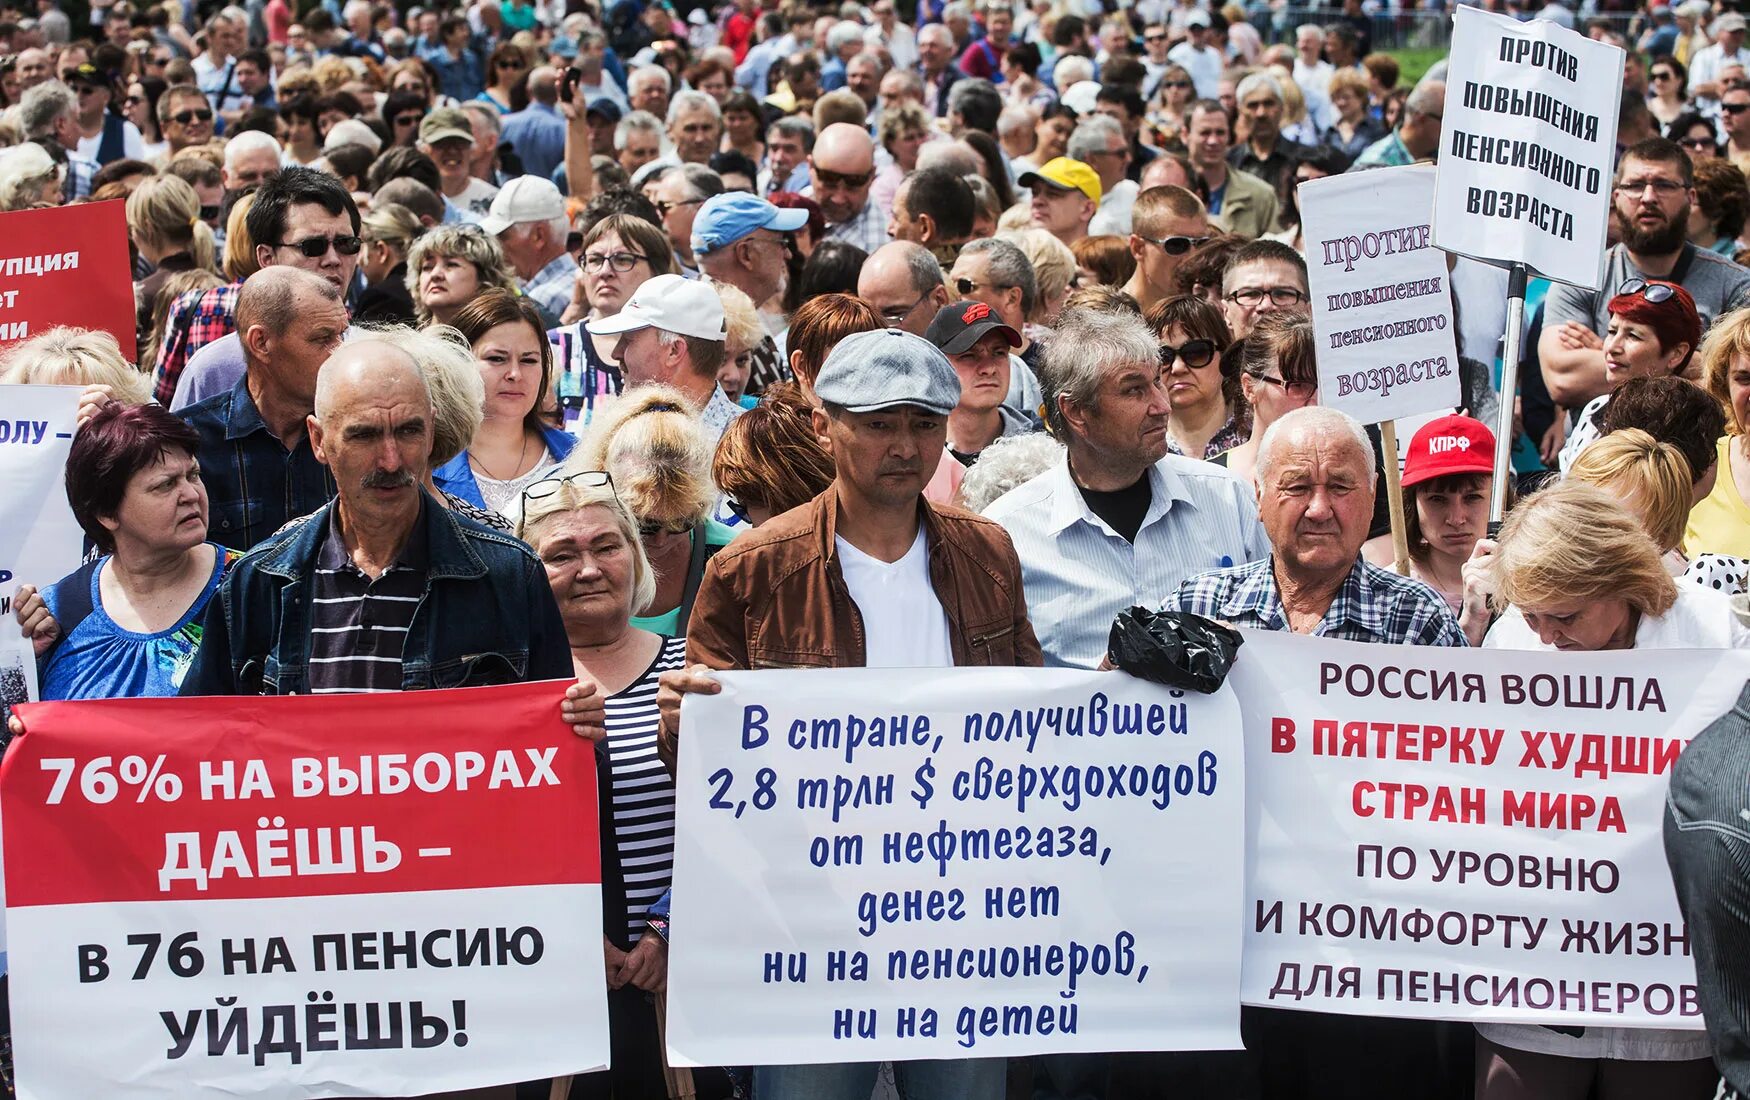 Правда будет повышение пенсии. Повышение пенсионного возраста. Пенсионная реформа в России. Митинг против повышения пенсионного возраста. Повышение пенсионного возраста реформа.